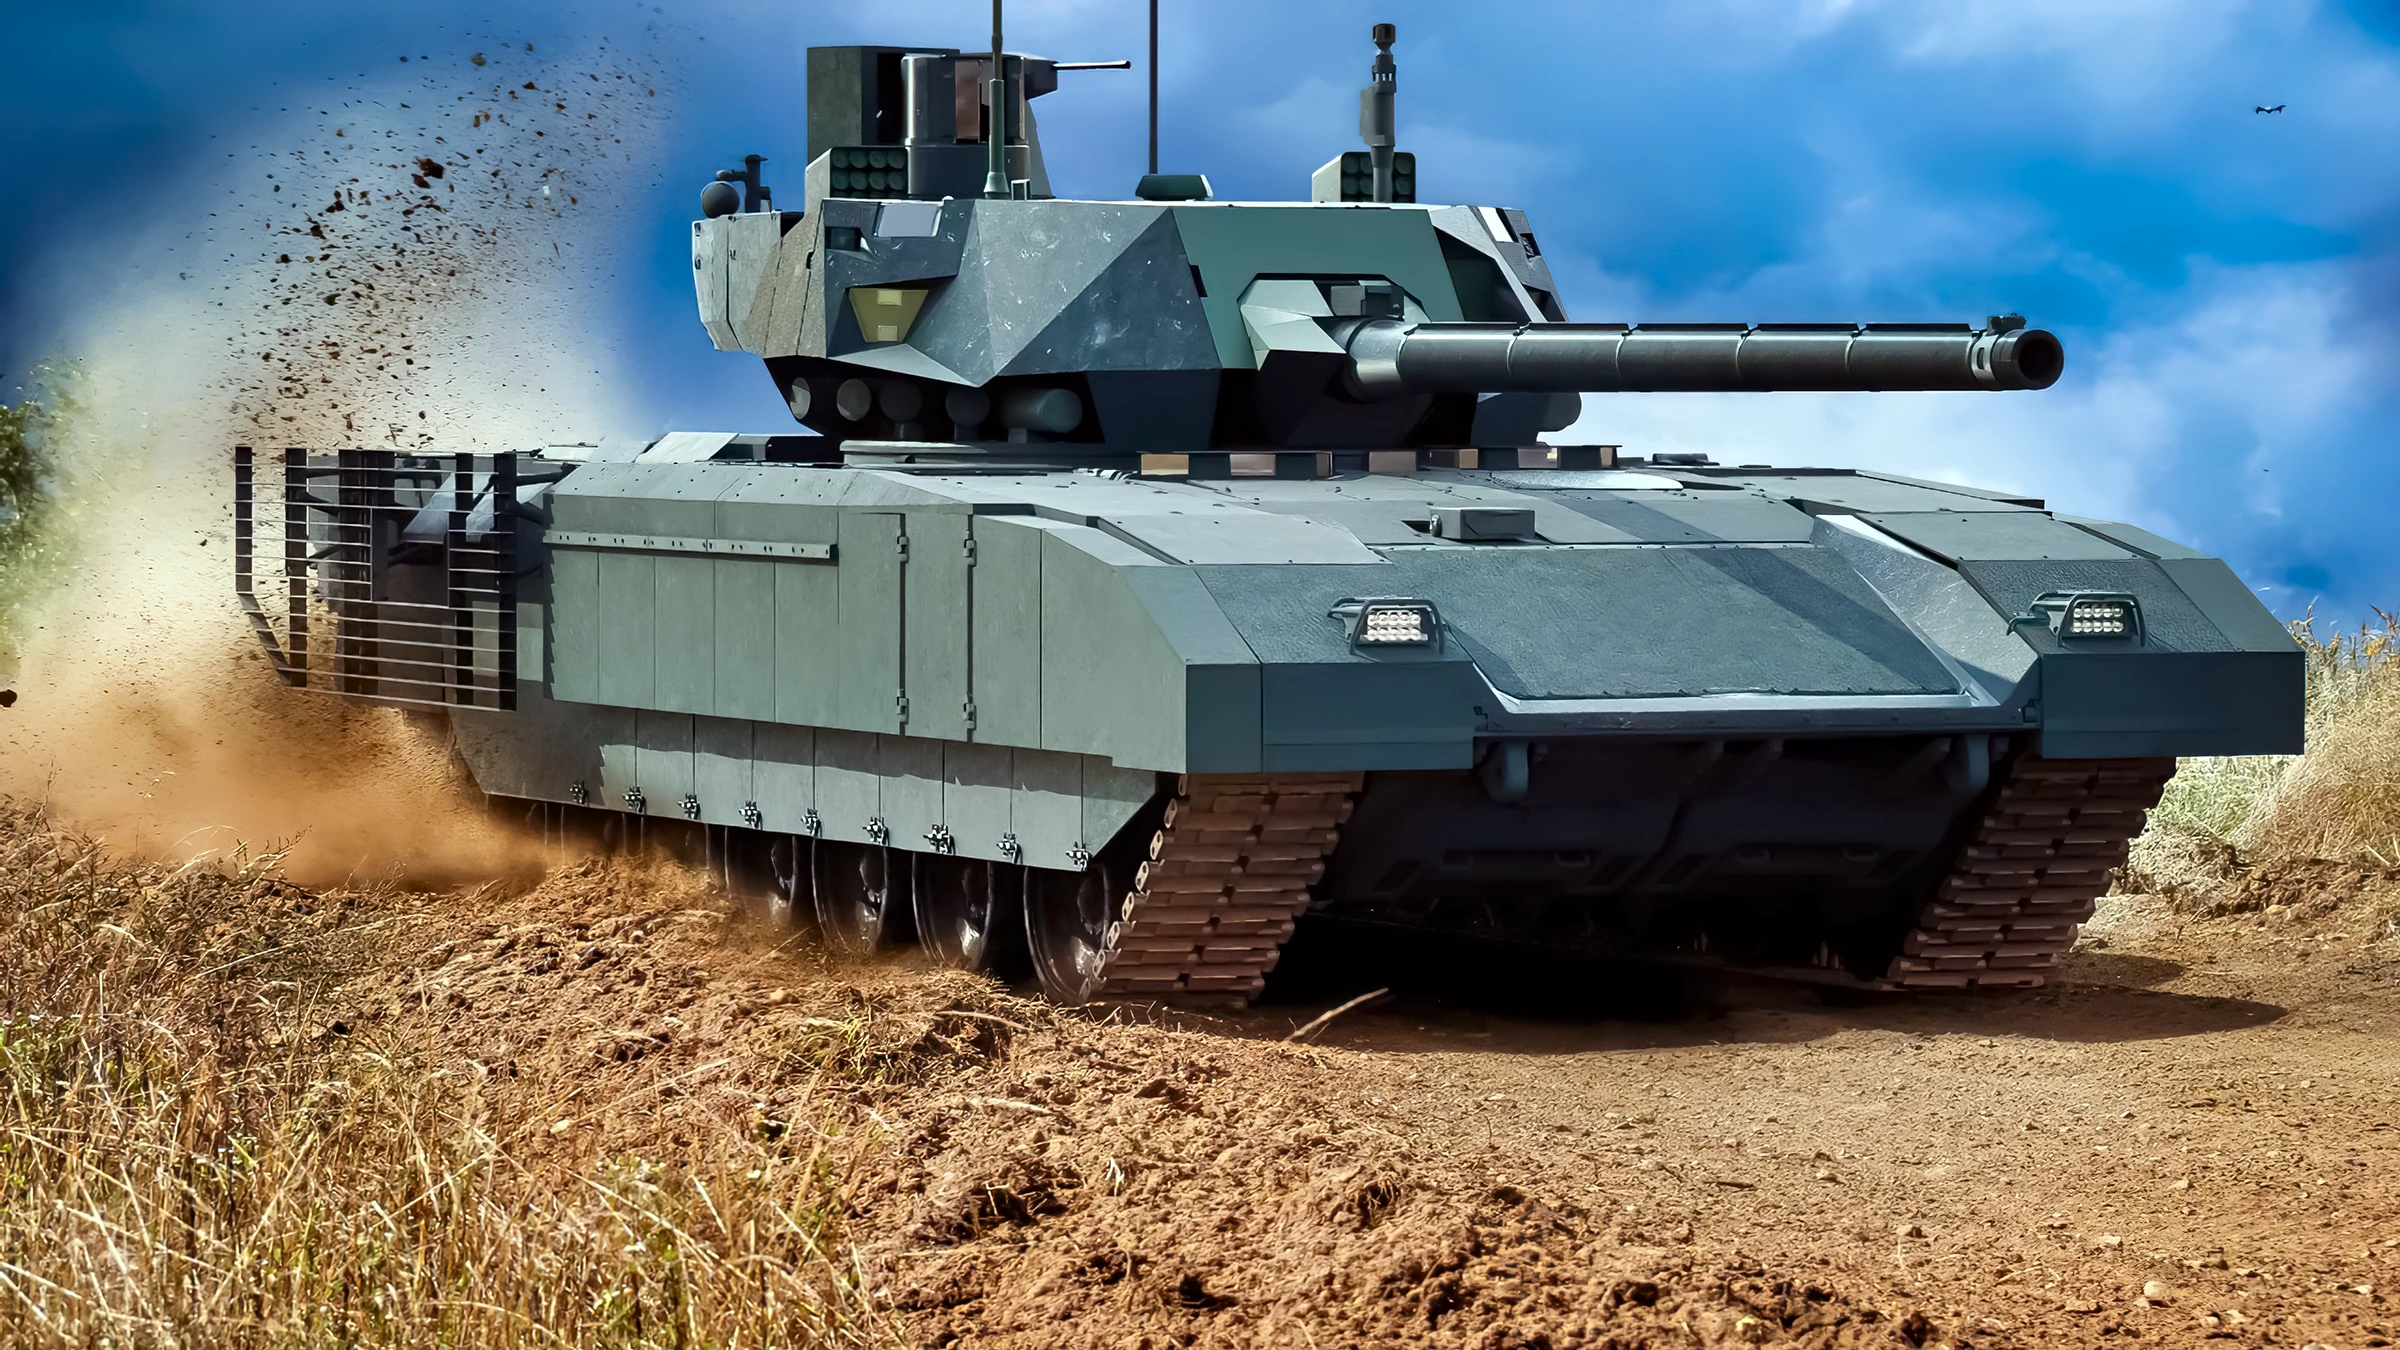 El T-14 Armata: promesas incumplidas y realidades distorsionadas